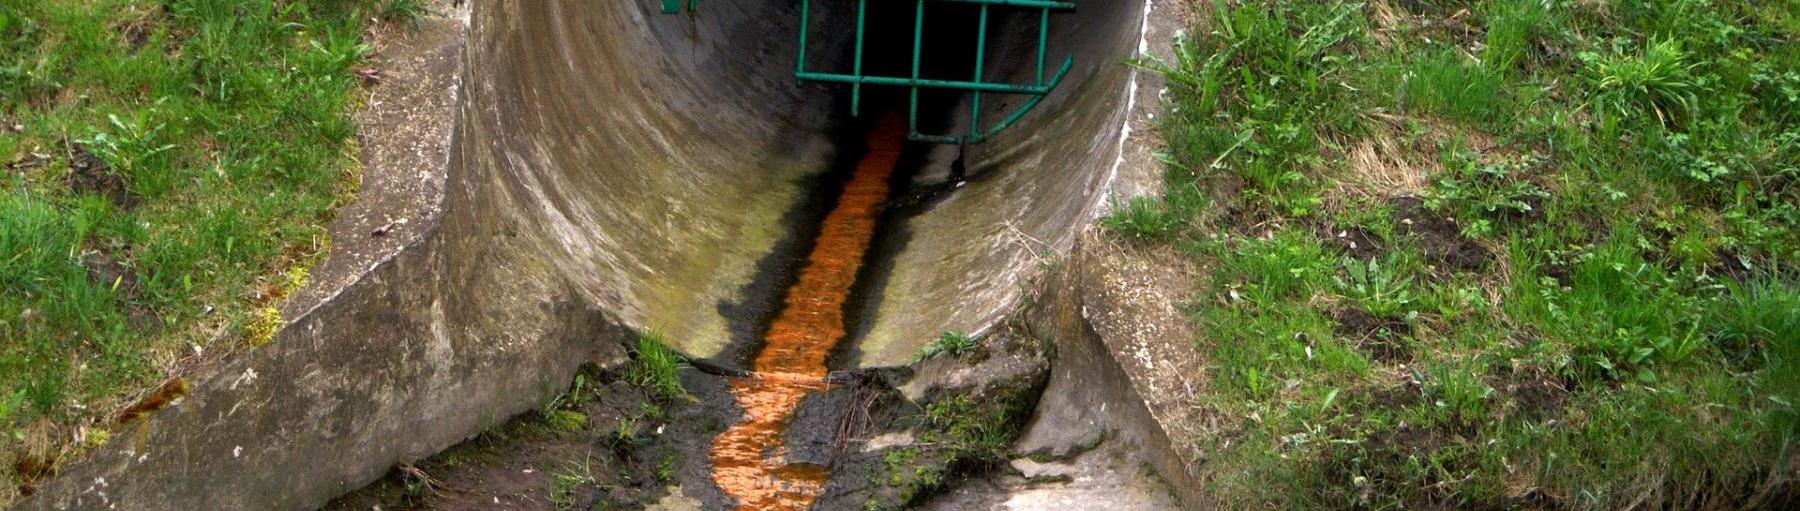 Nie wszyscy w Polsce muszą mieć kanalizację? Fot. Pixbay